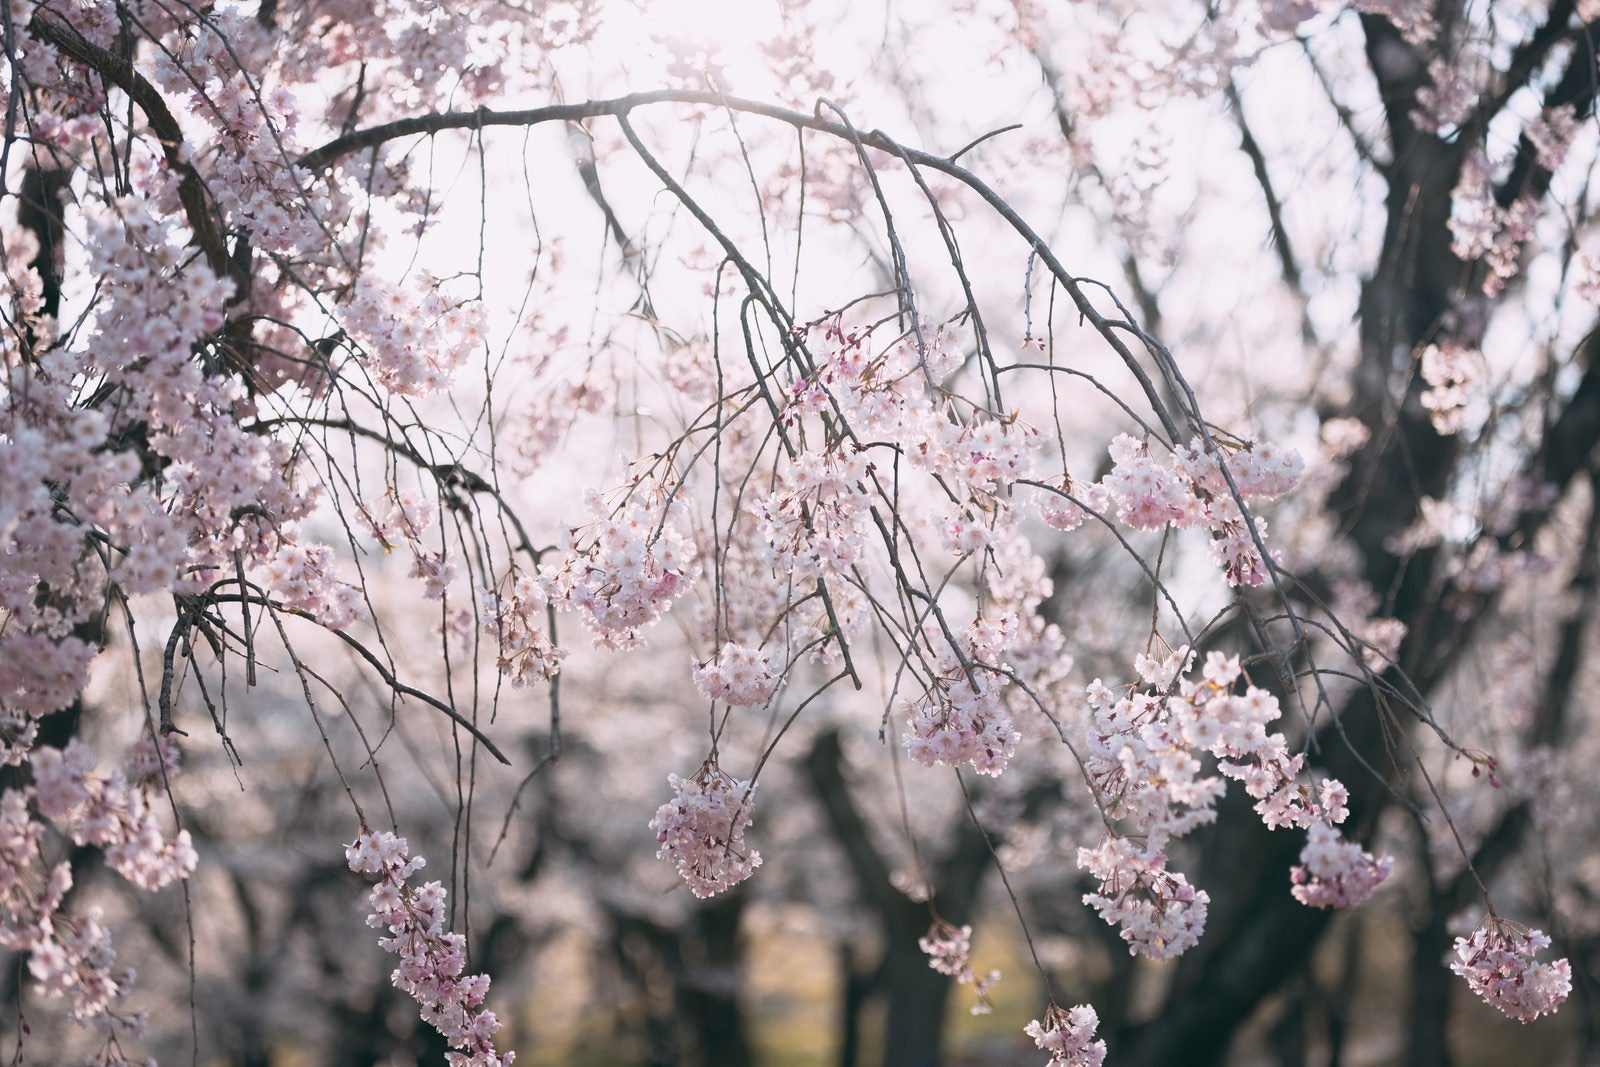 「光を浴びる逢瀬公園の桜」の写真